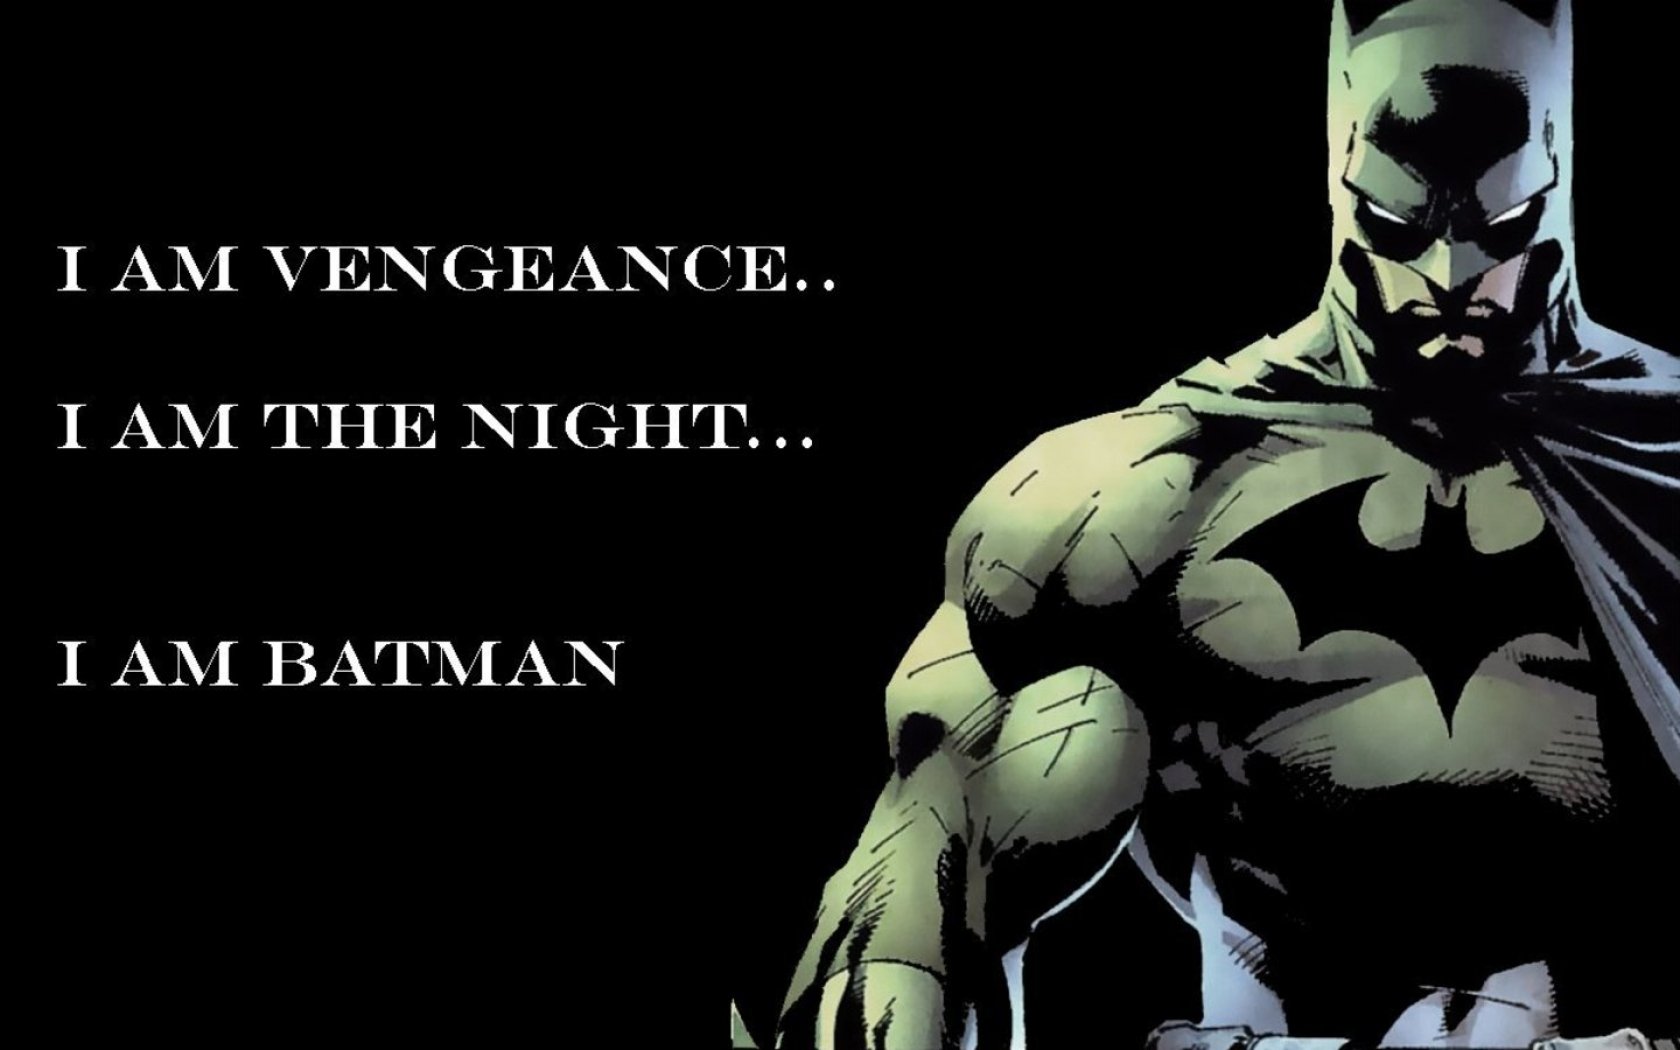 quote, comics, batman, dc comics, superhero